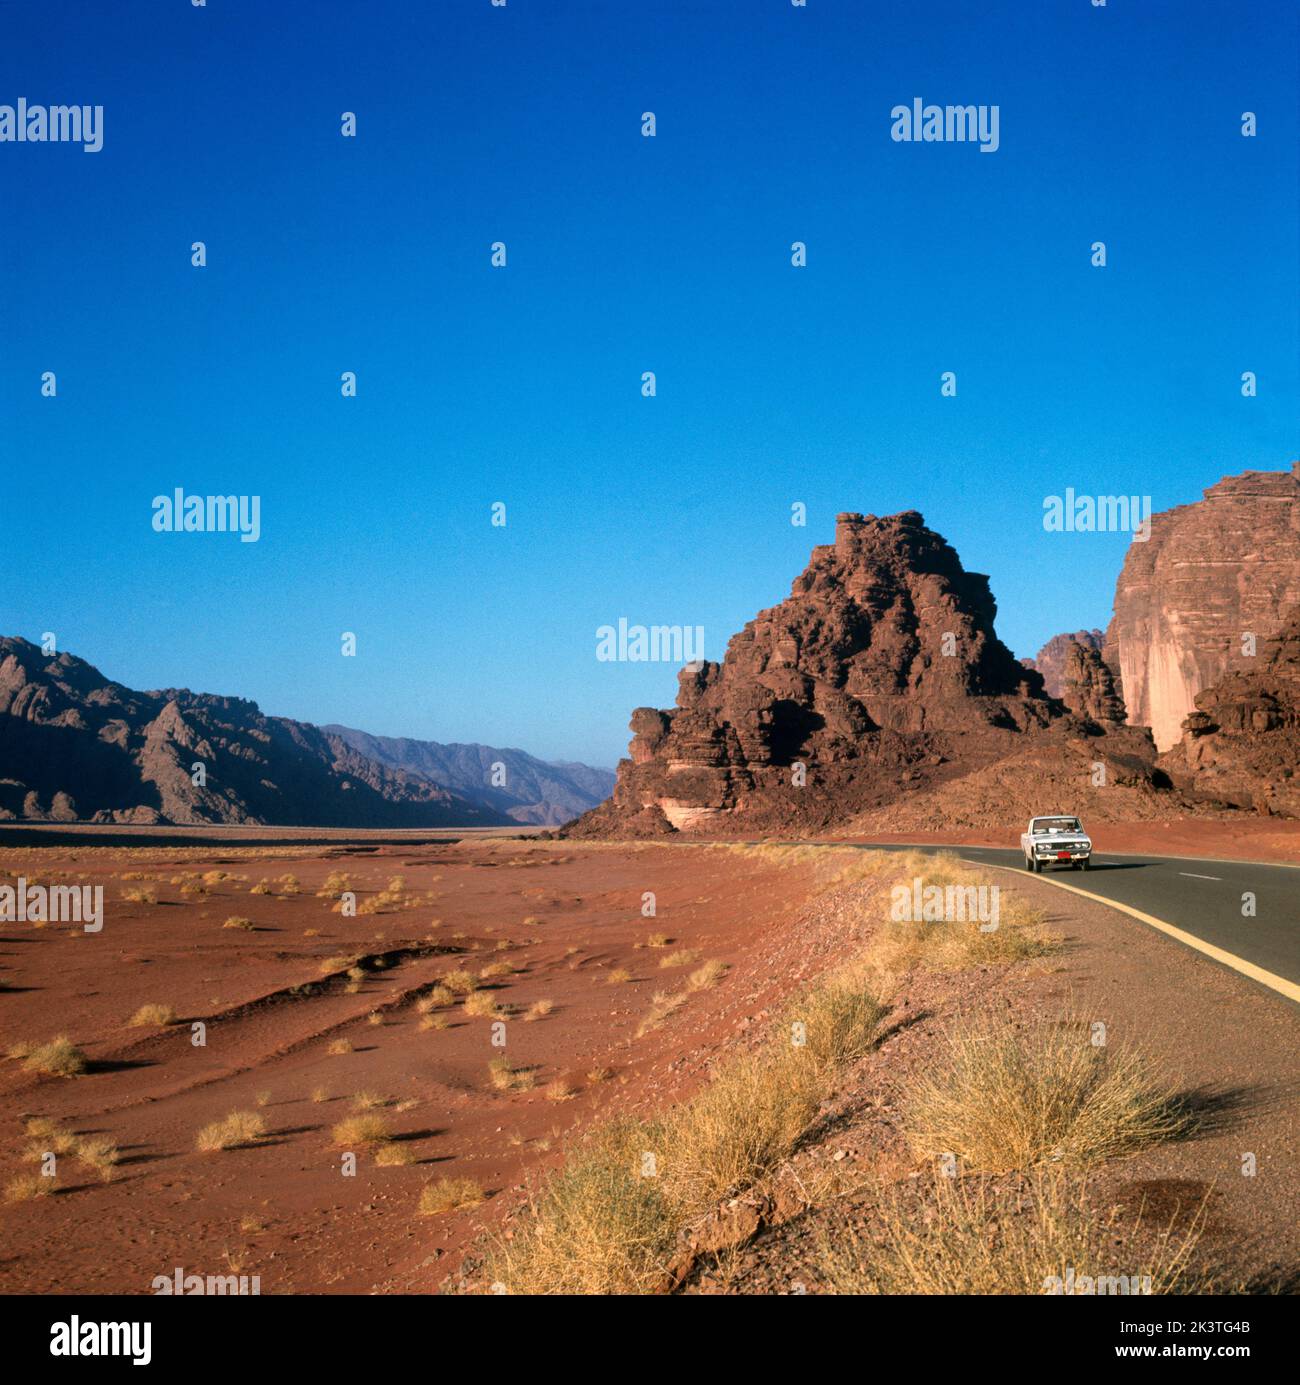 Saudi Arabia Hail - Tabuk Road deserto e montagne Foto Stock